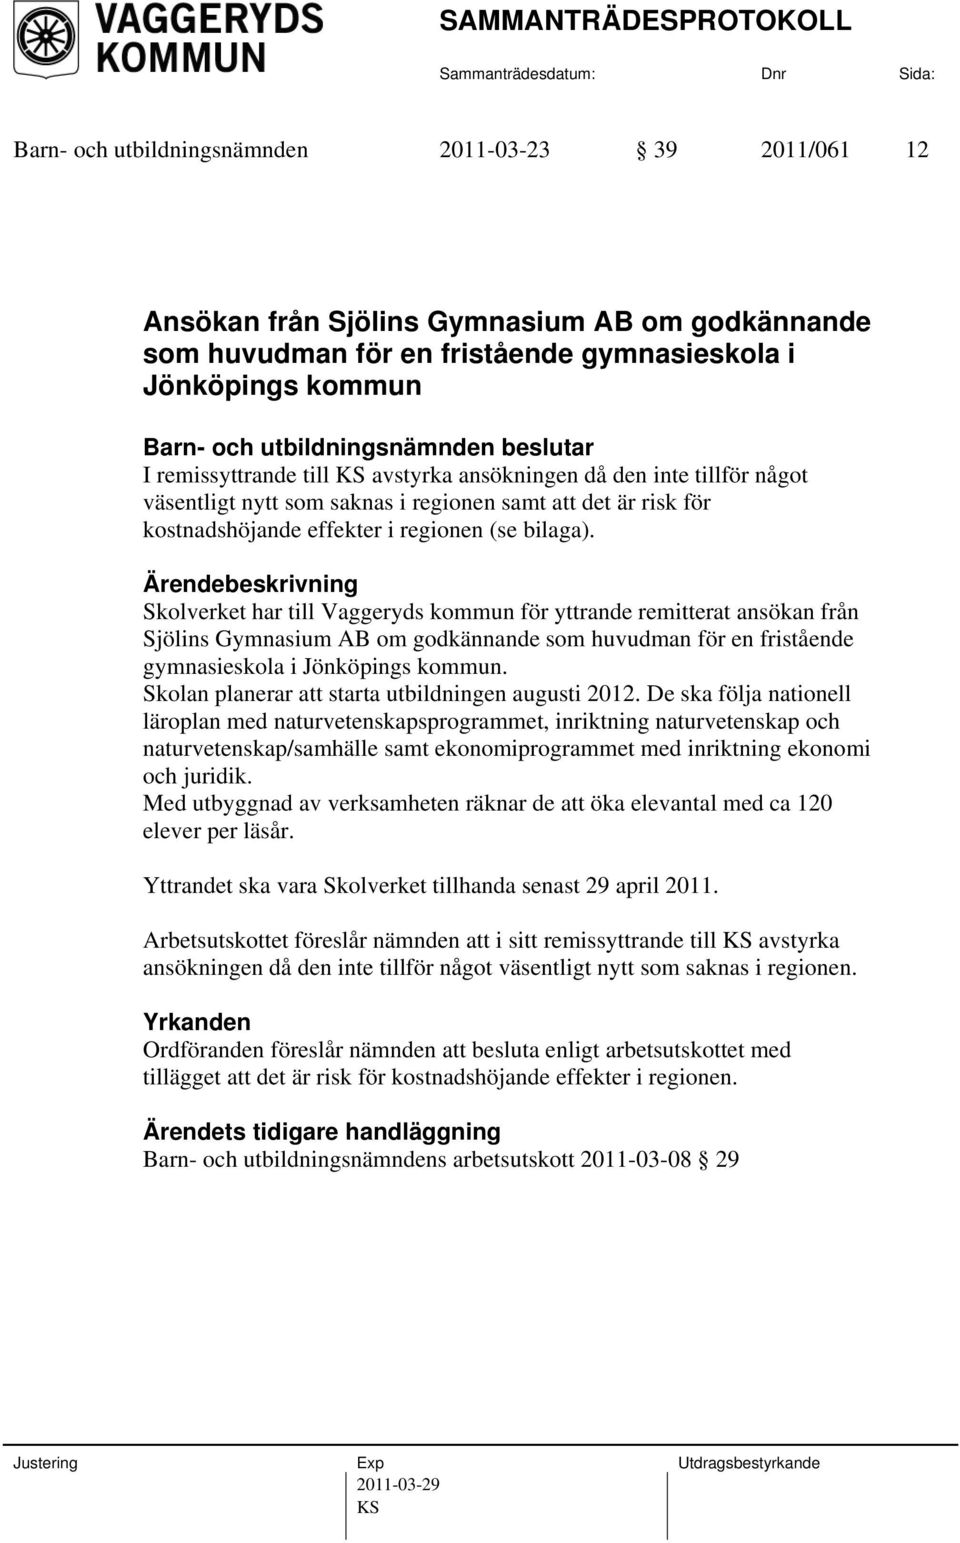 Skolverket har till Vaggeryds kommun för yttrande remitterat ansökan från Sjölins Gymnasium AB om godkännande som huvudman för en fristående gymnasieskola i Jönköpings kommun.